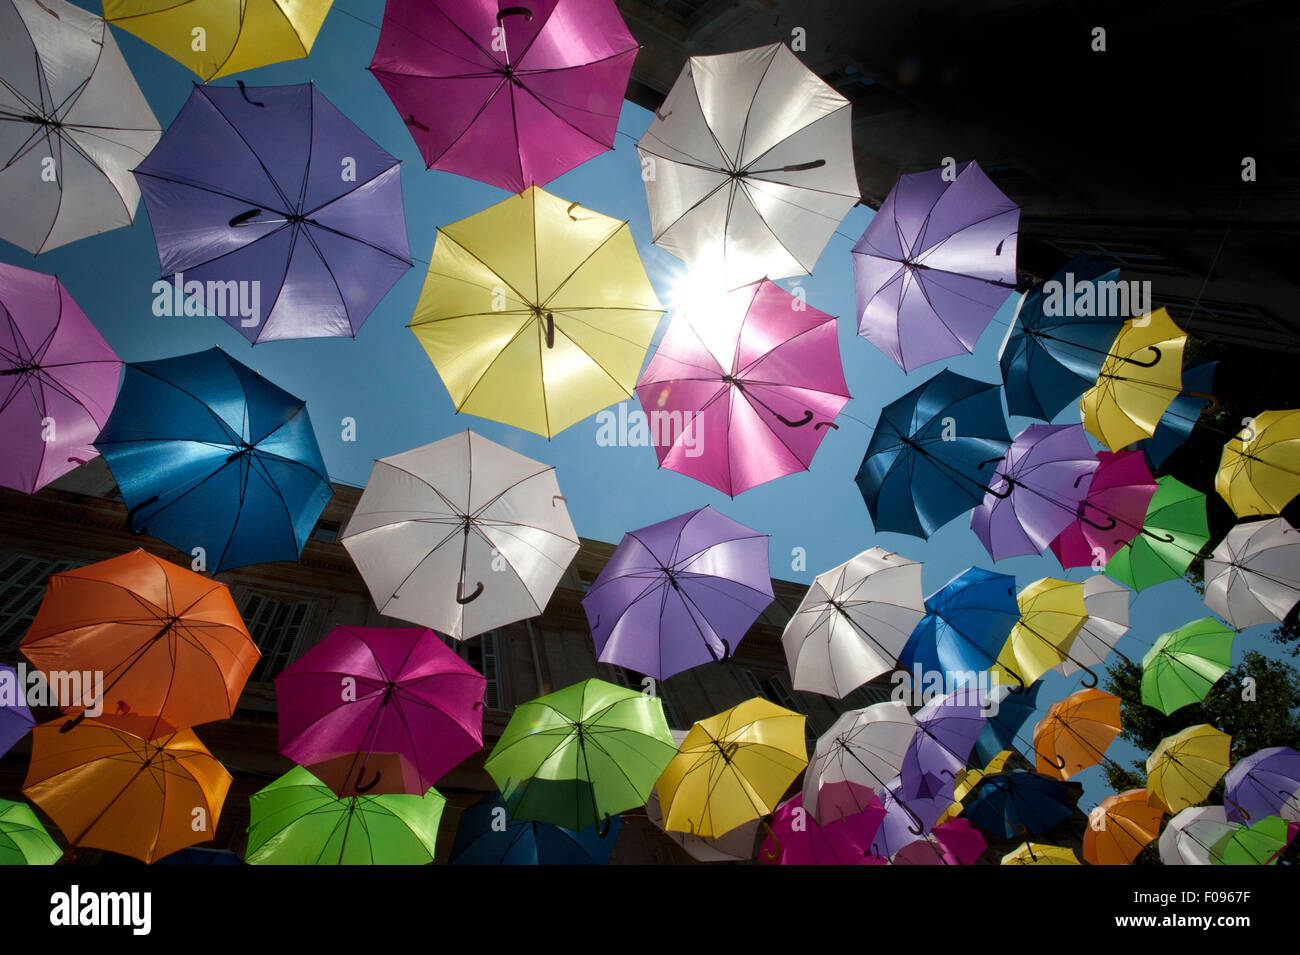 Parapluies flottantes de couleur vive remplir le ciel au-dessus de la Rue Jean Jaurès, Arles, Bouches-du-Rhône, Provence, France Banque D'Images